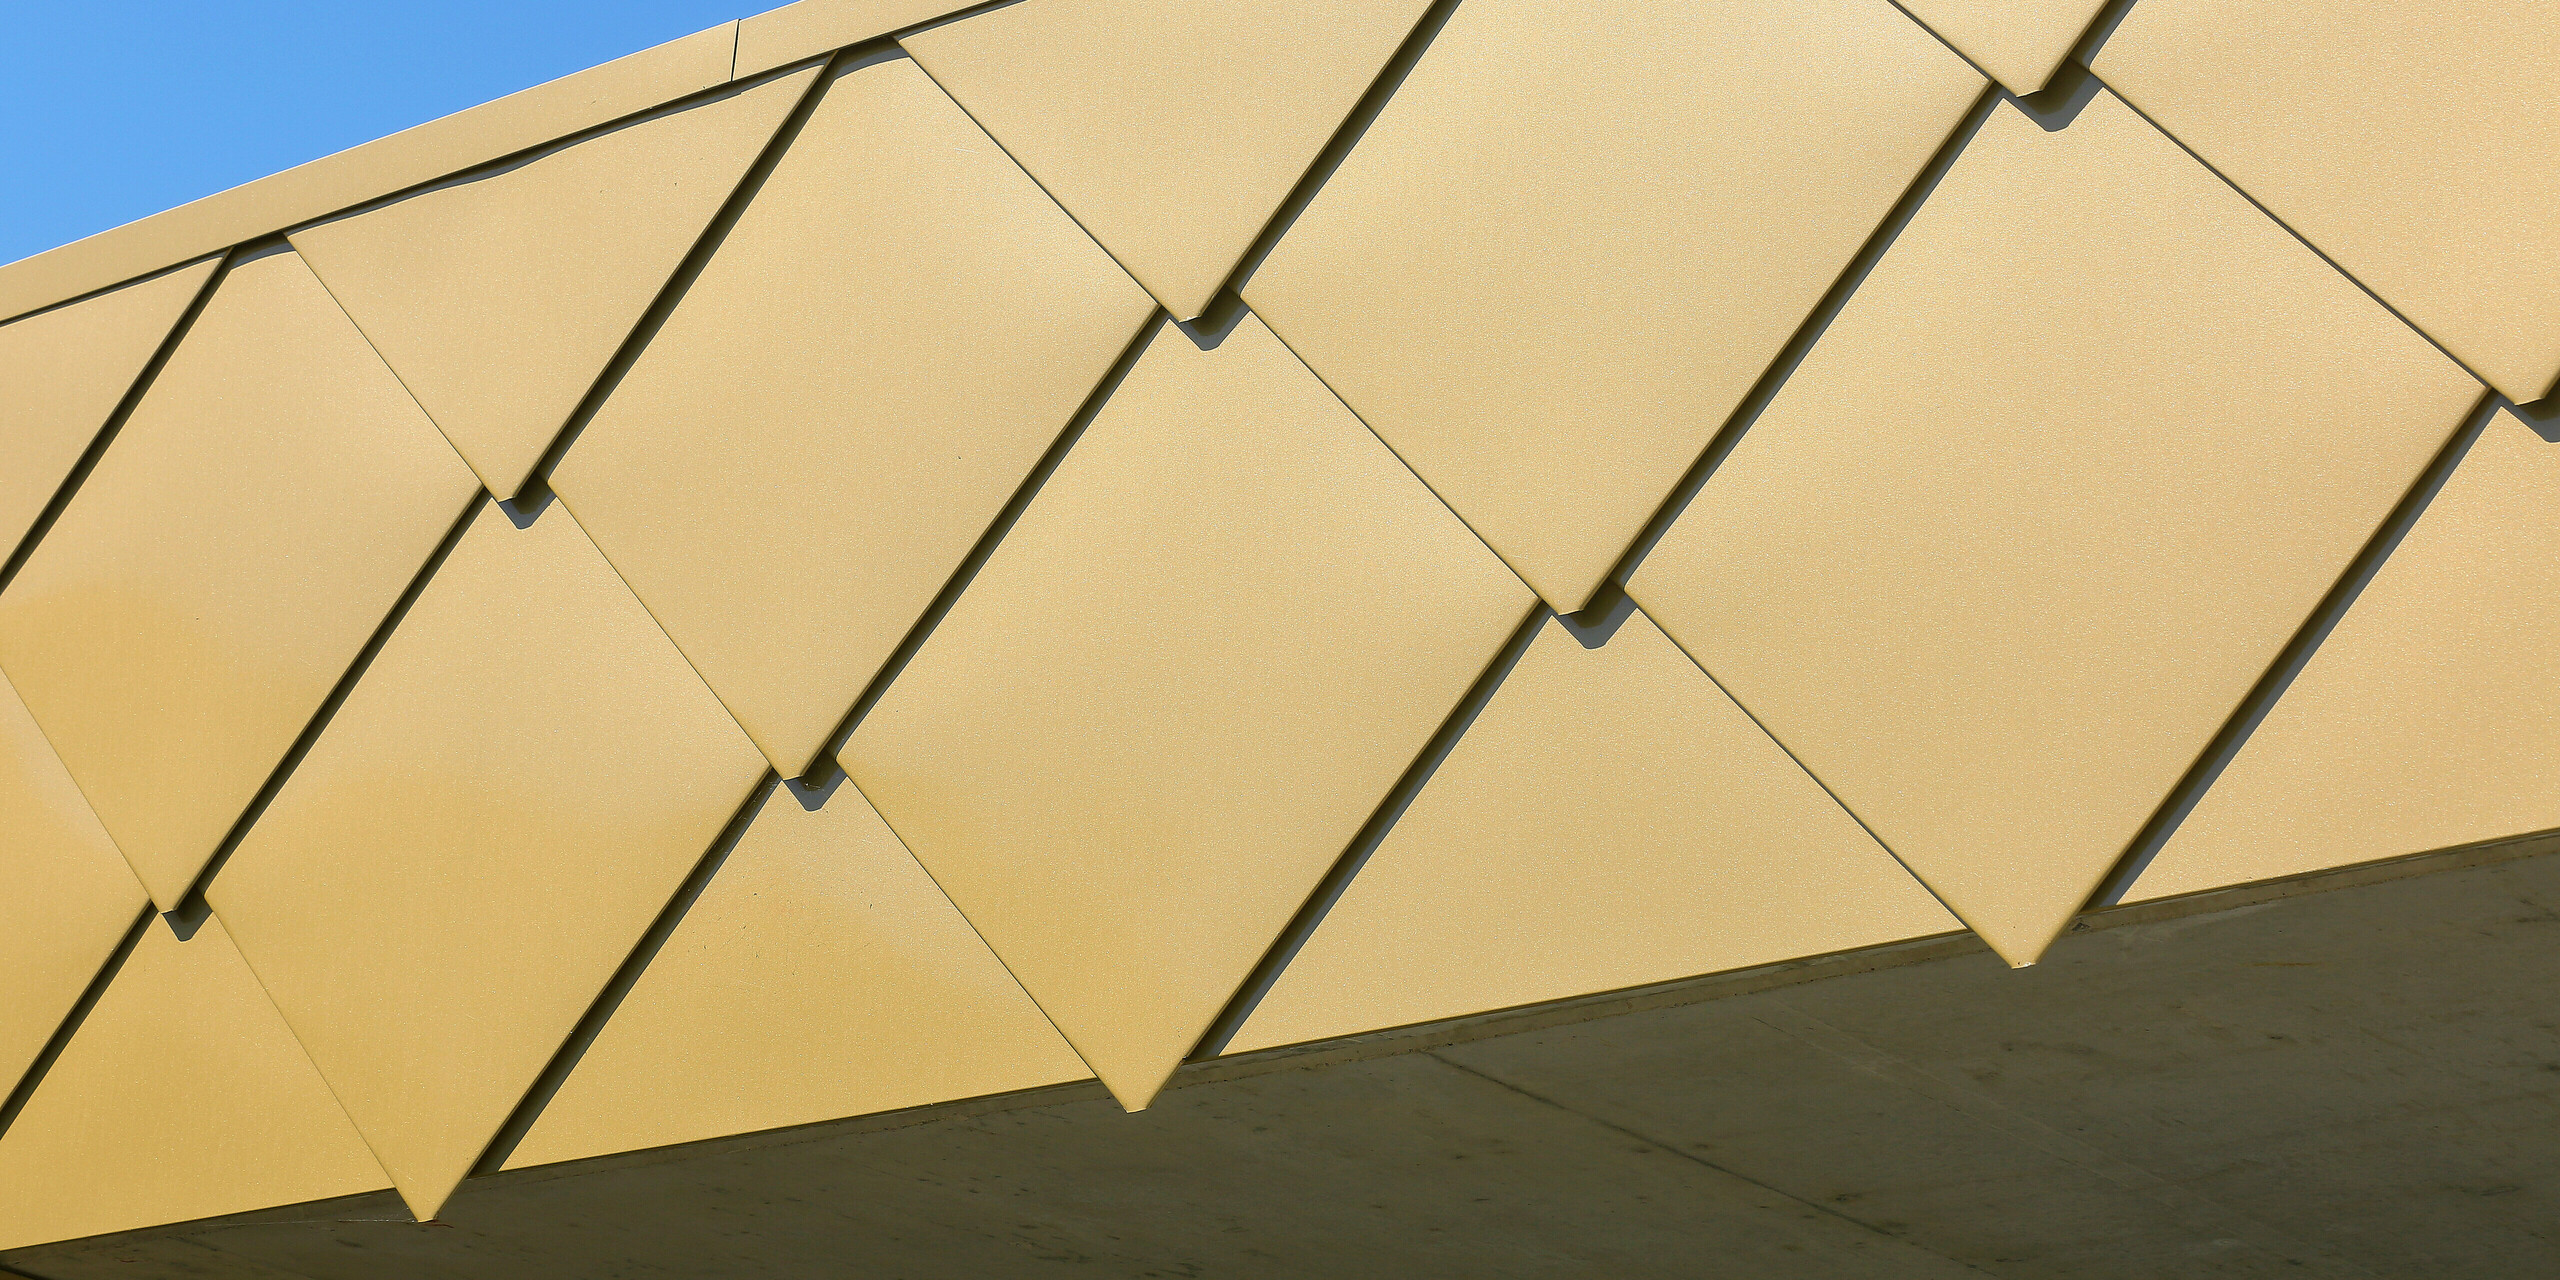 Detailaufnahme der glänzenden PREFA Wandrauten 44 × 44 in Sparkling Gold am Kulturzentrum Fessenheim in Frankreich. Die markanten Rauten aus Aluminium lassen das Gebäude in einem auffälligen Gold erstrahlen.